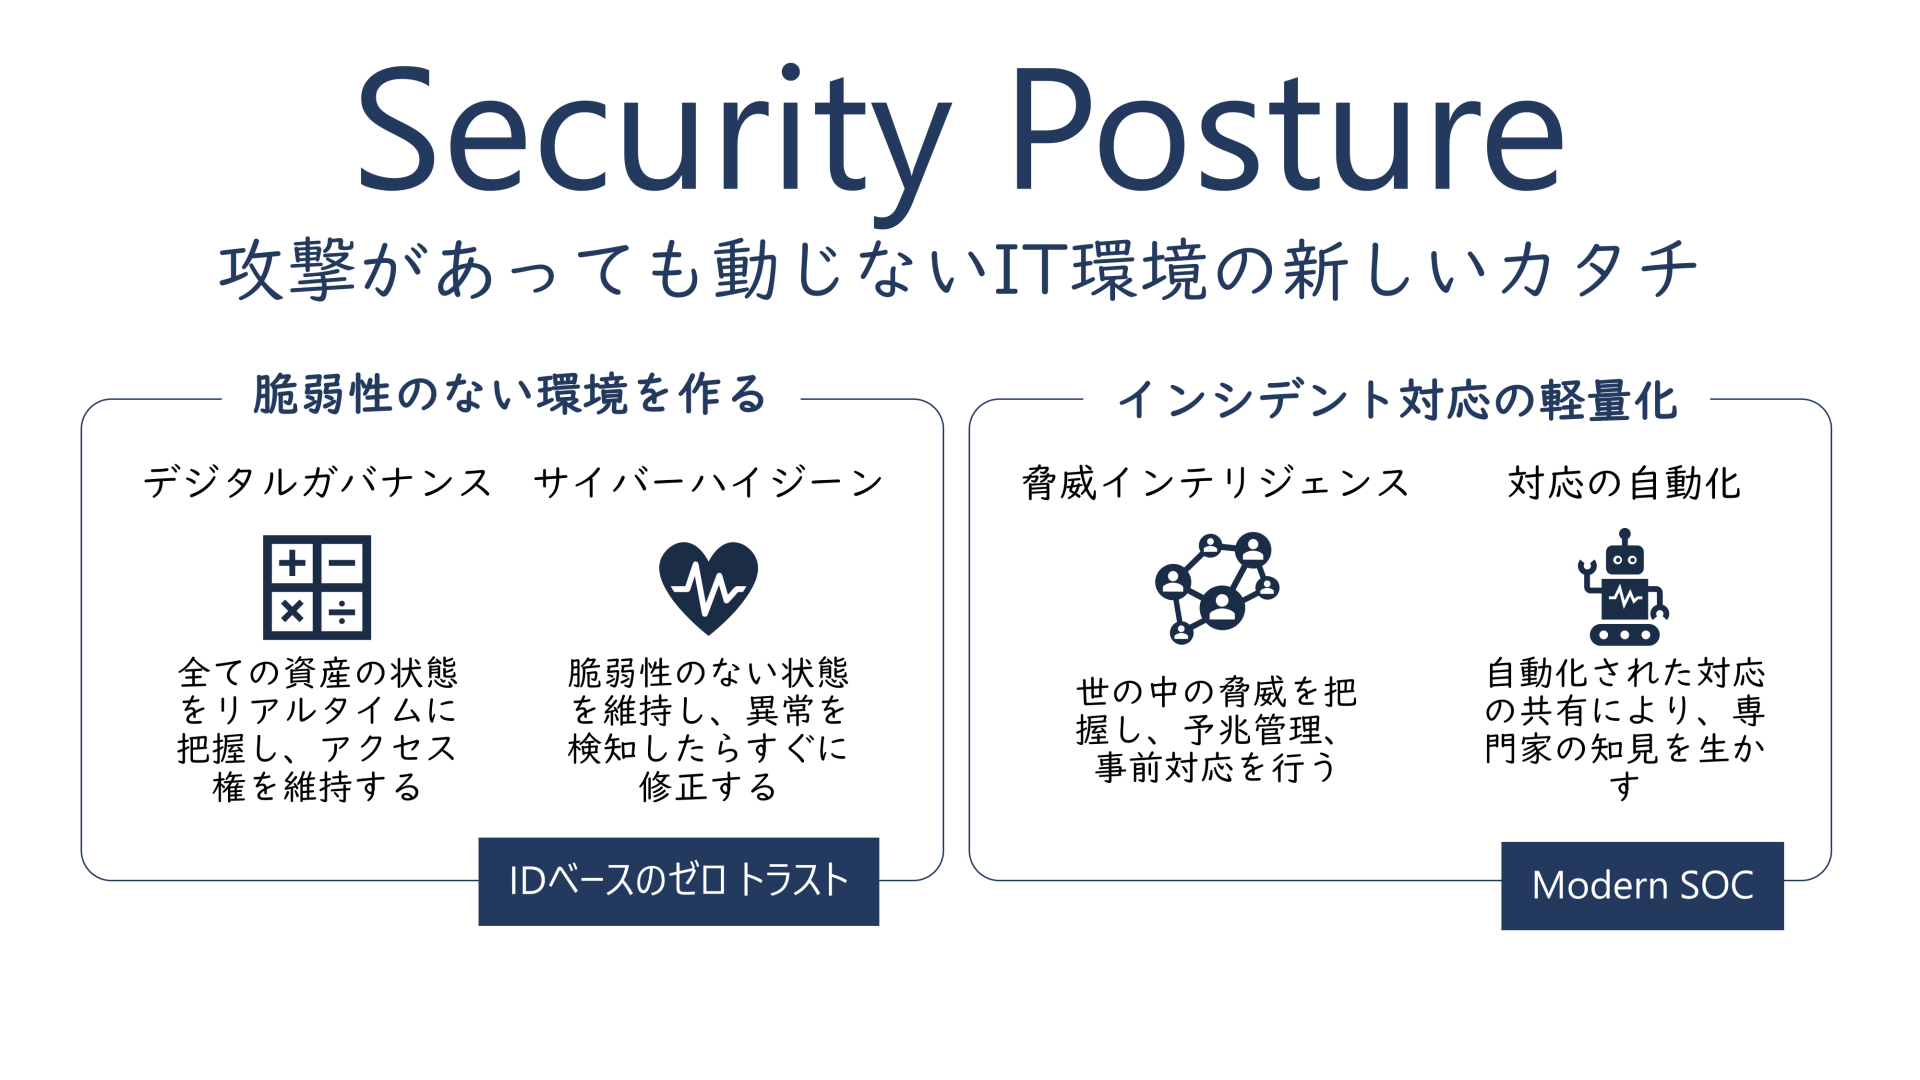 日本はマルウェア被害がもっとも少ない国 Covid 19便乗のサイバー攻撃などをマイクロソフトが報告 これからのセキュリティの在り方に対策を前面に出さない Security Posture を提案 Pc Watch